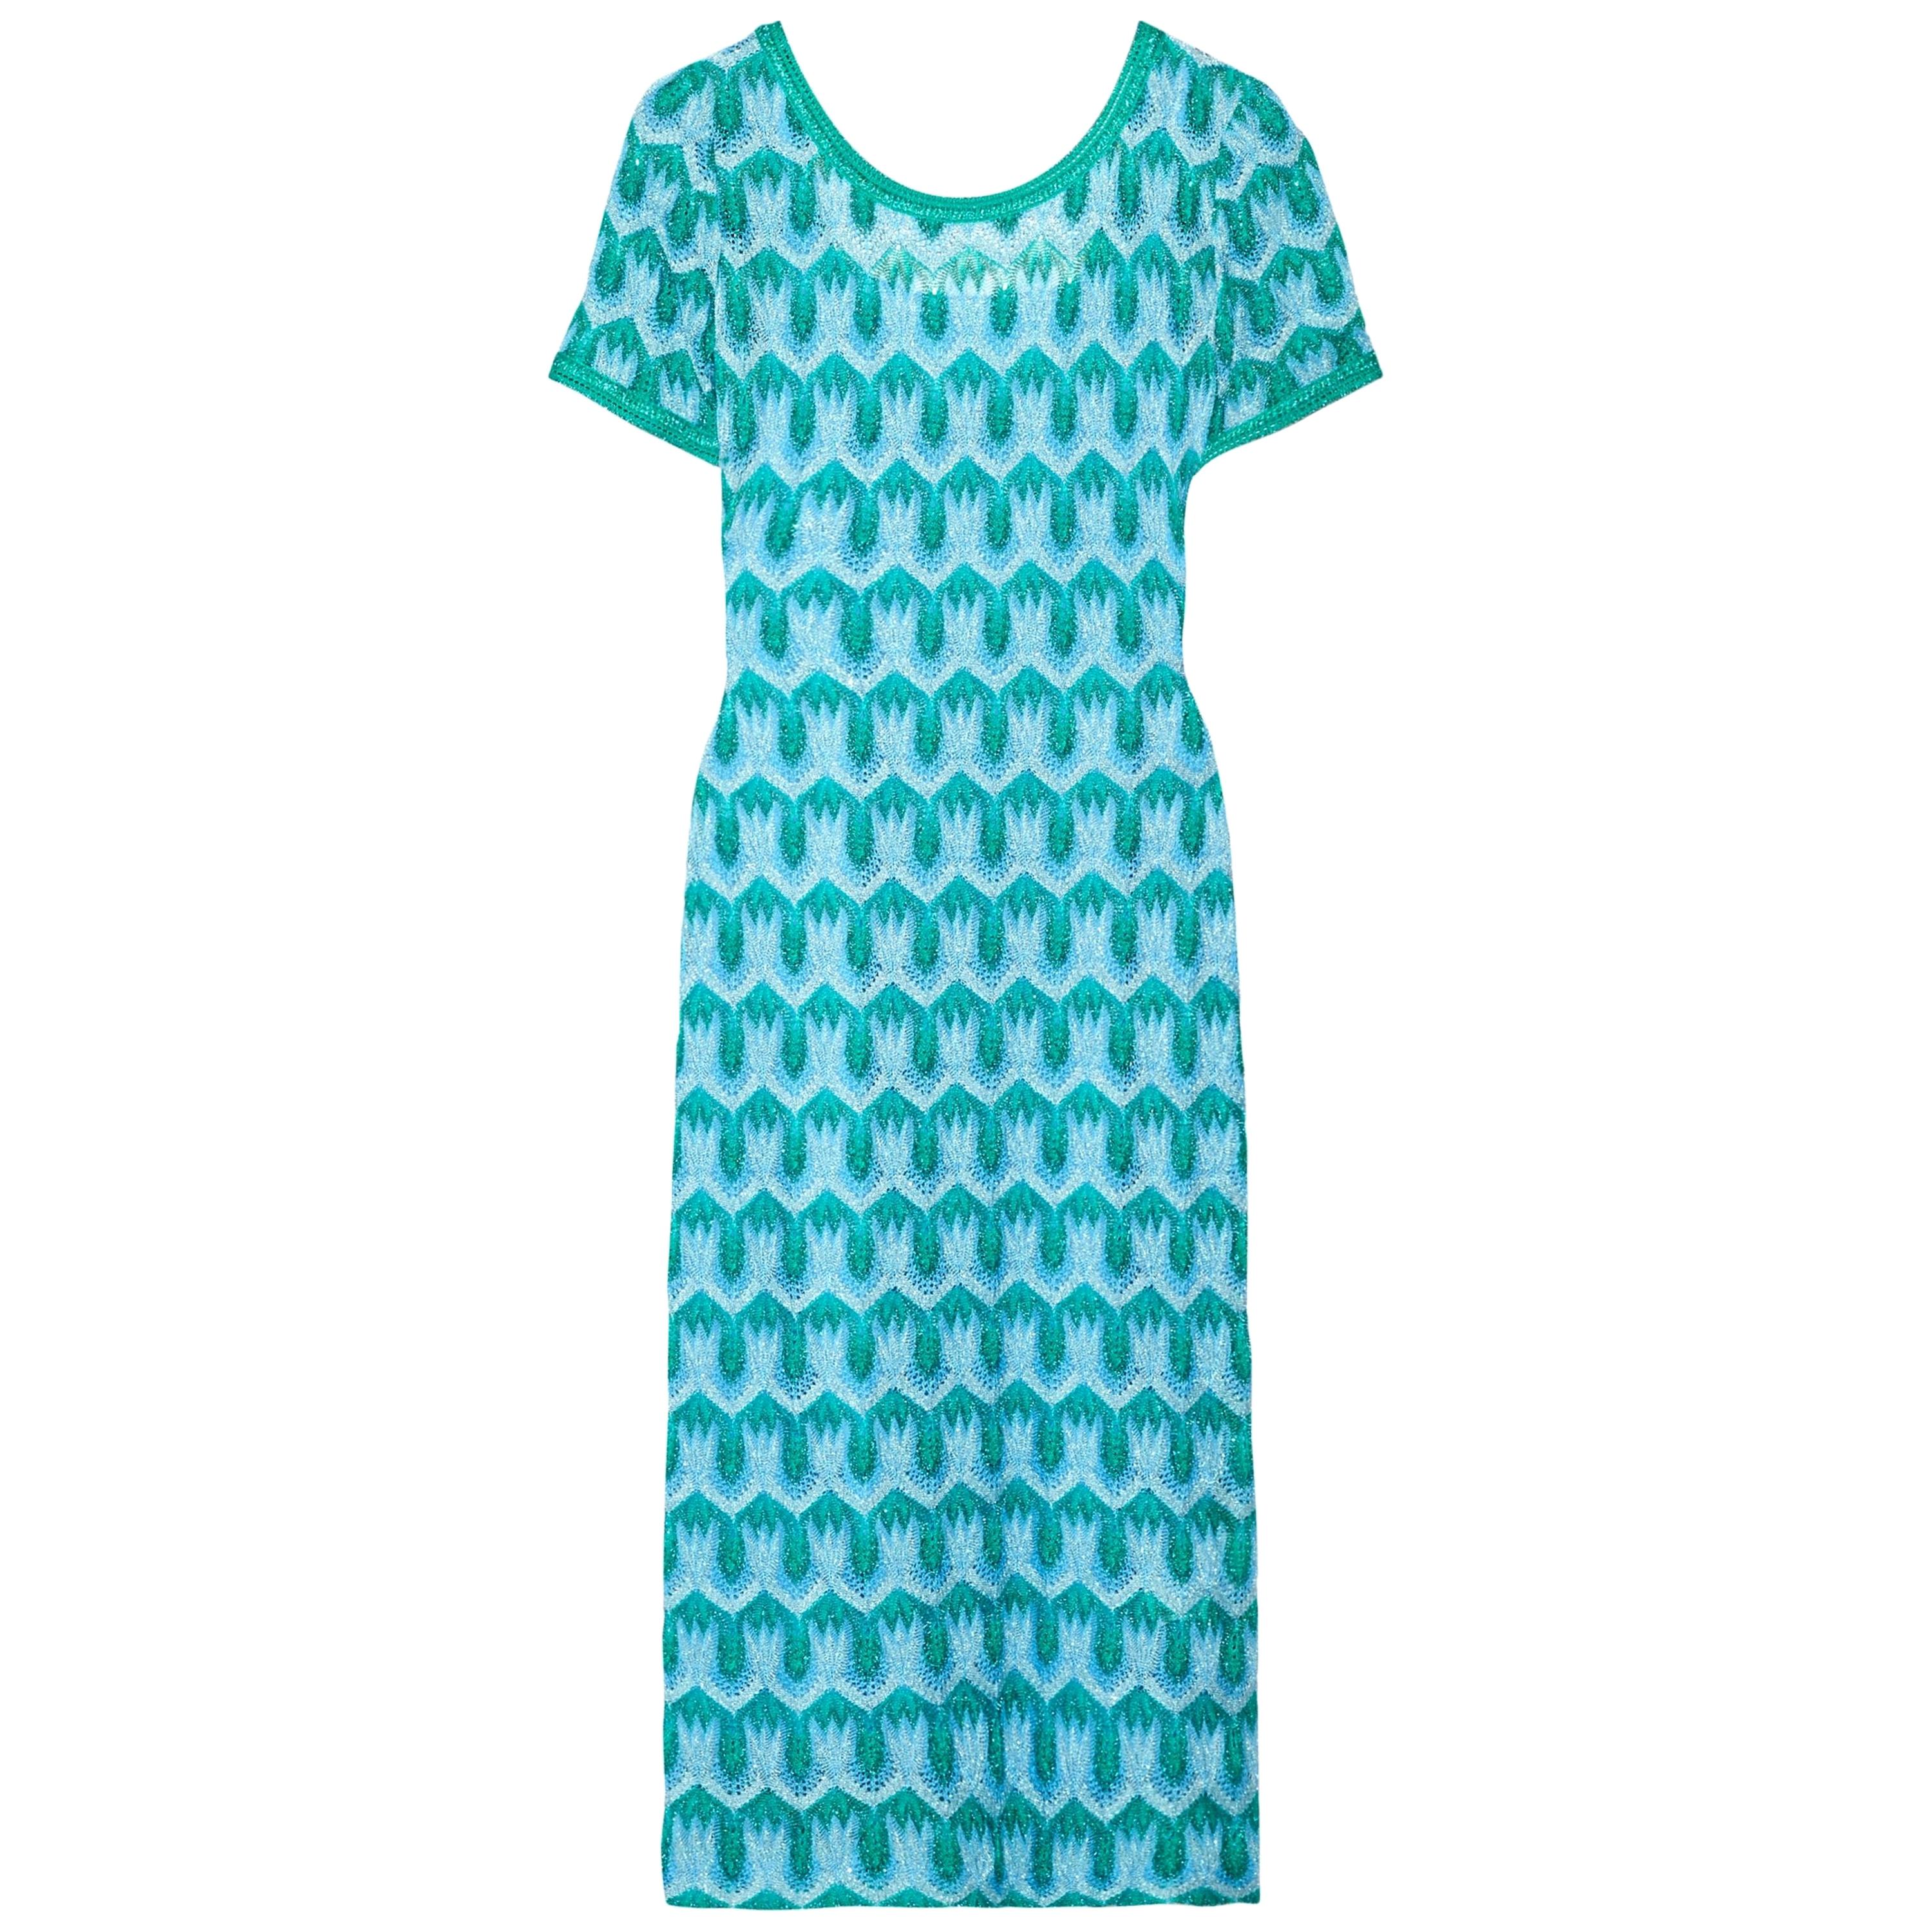 NEW Missoni Metallic Turquoise Aqua Crochet Knit Midi Dress